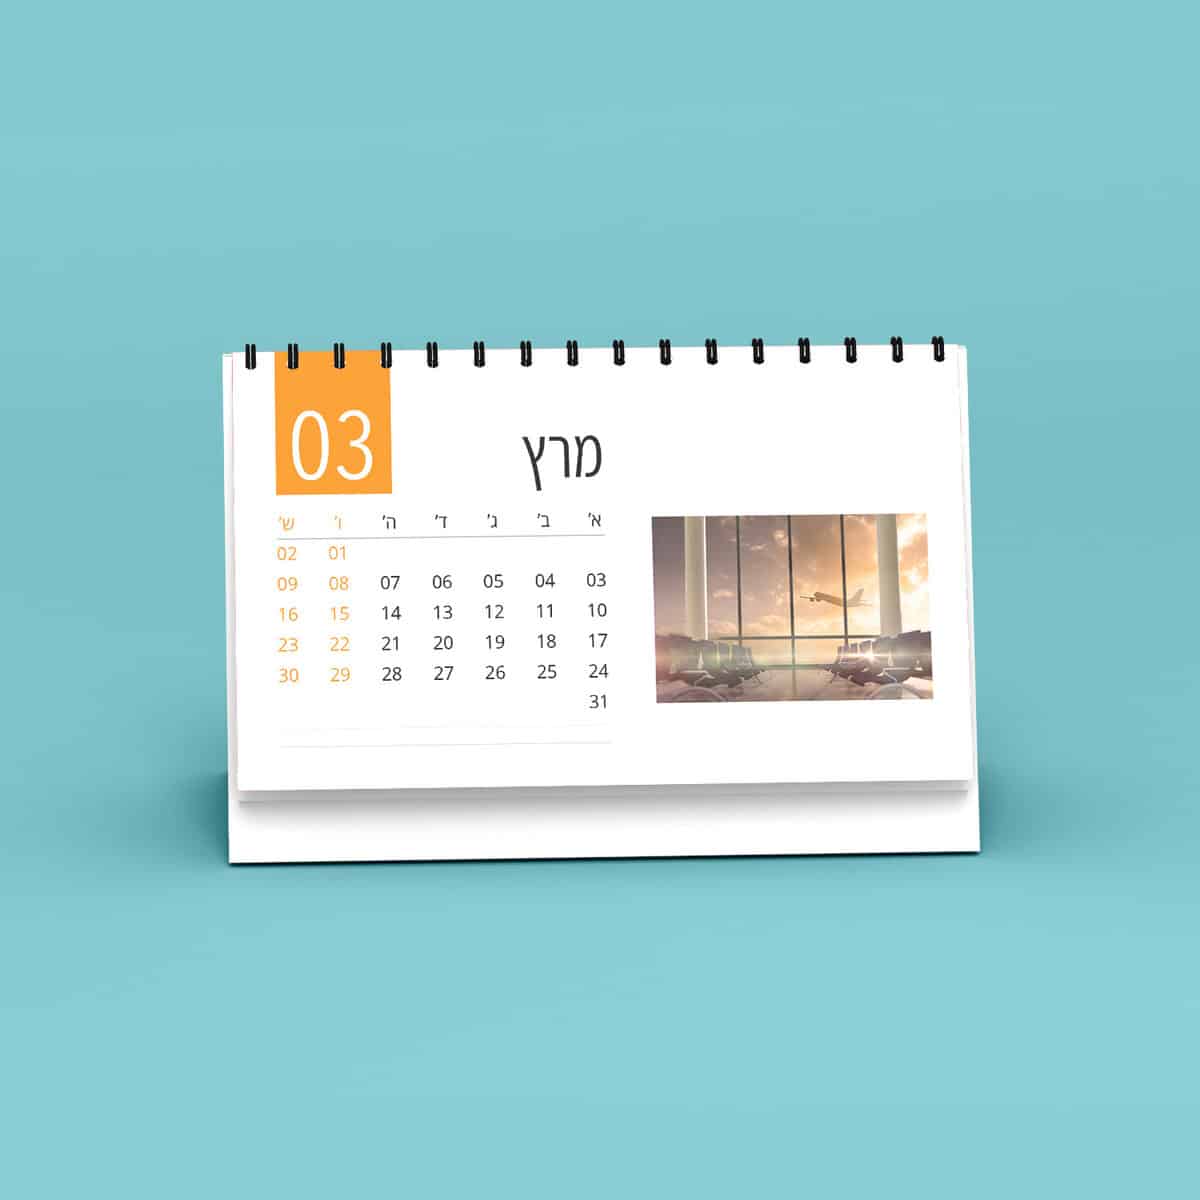 לוח שנה שולחני ממותג מונח על רקע כחול כאשר הוא מציג את חודש מרץ.